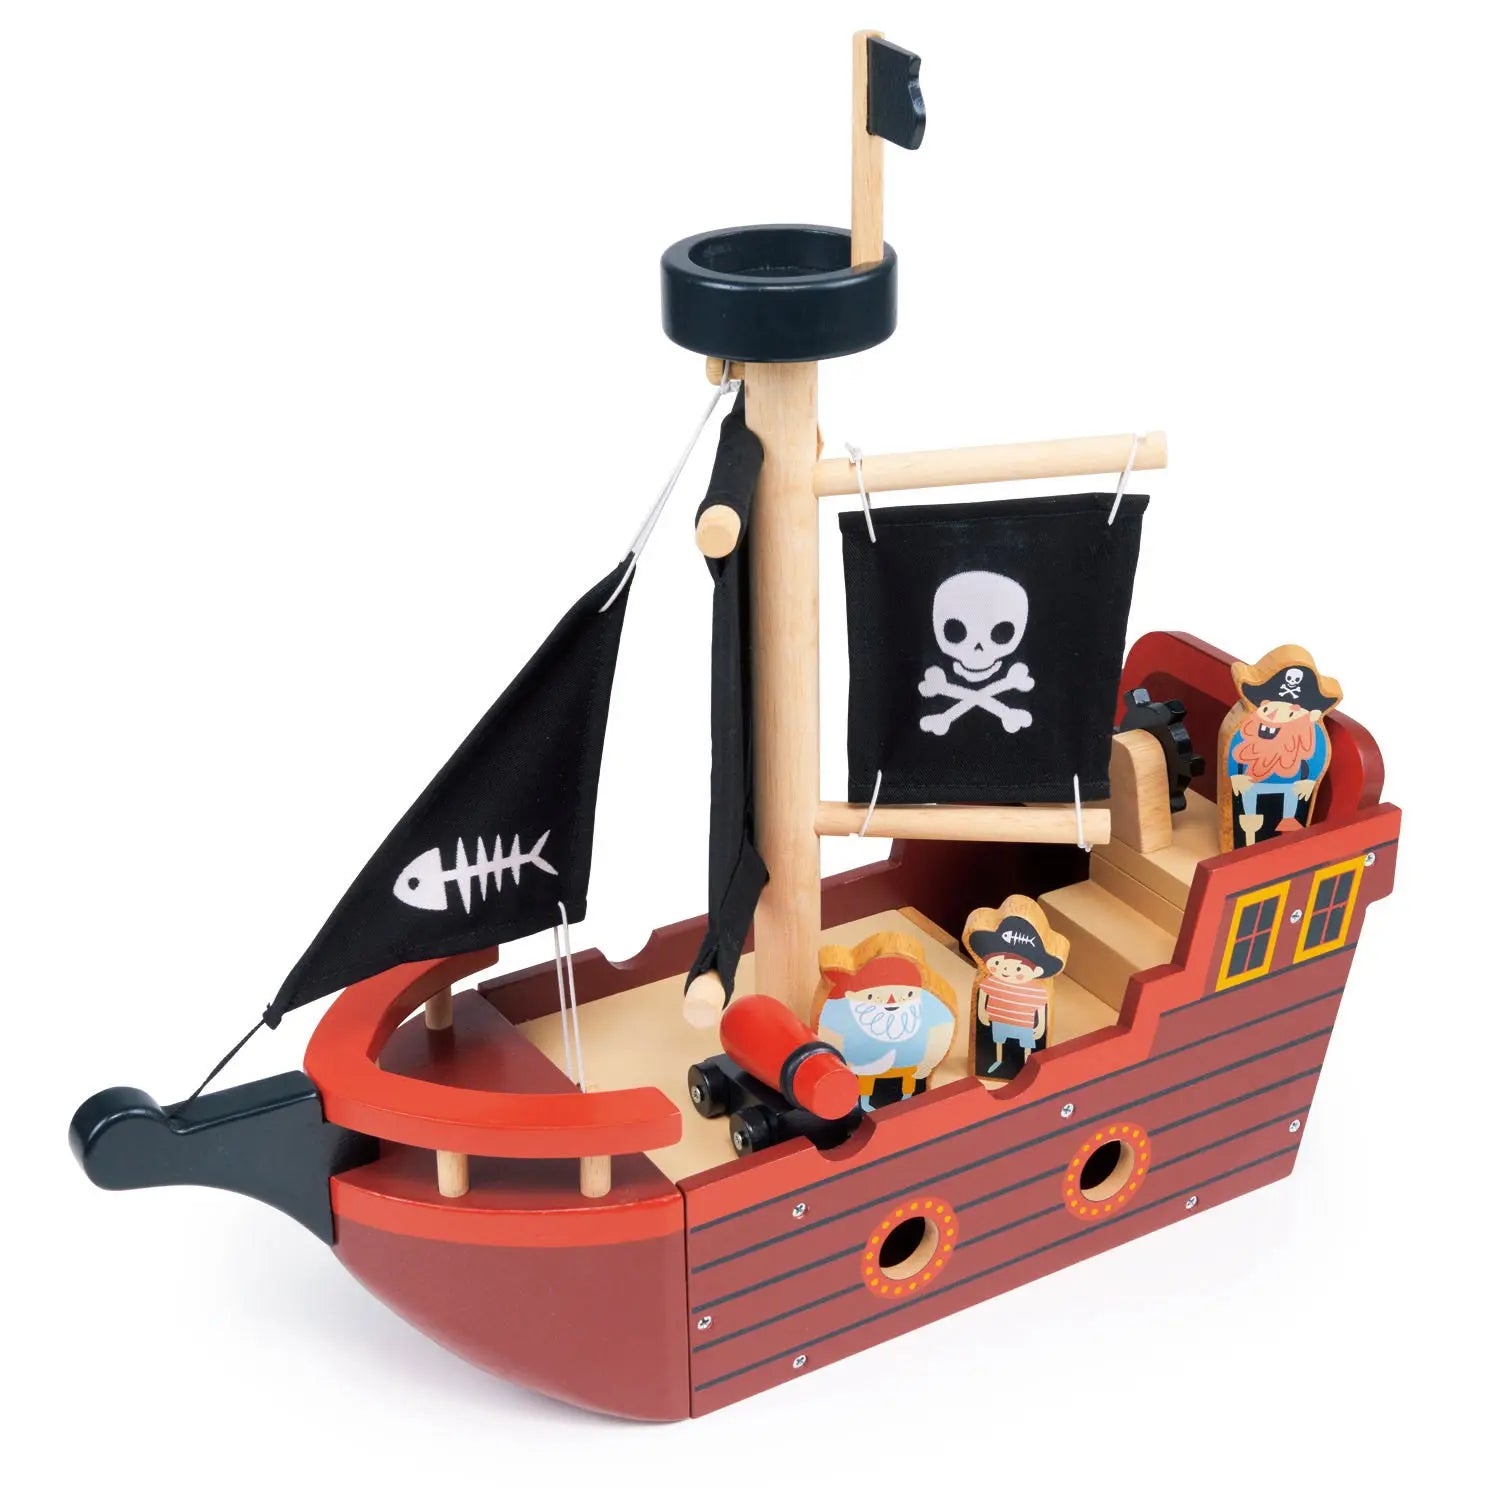 Fishbones Pirate Ship Toy Mentari